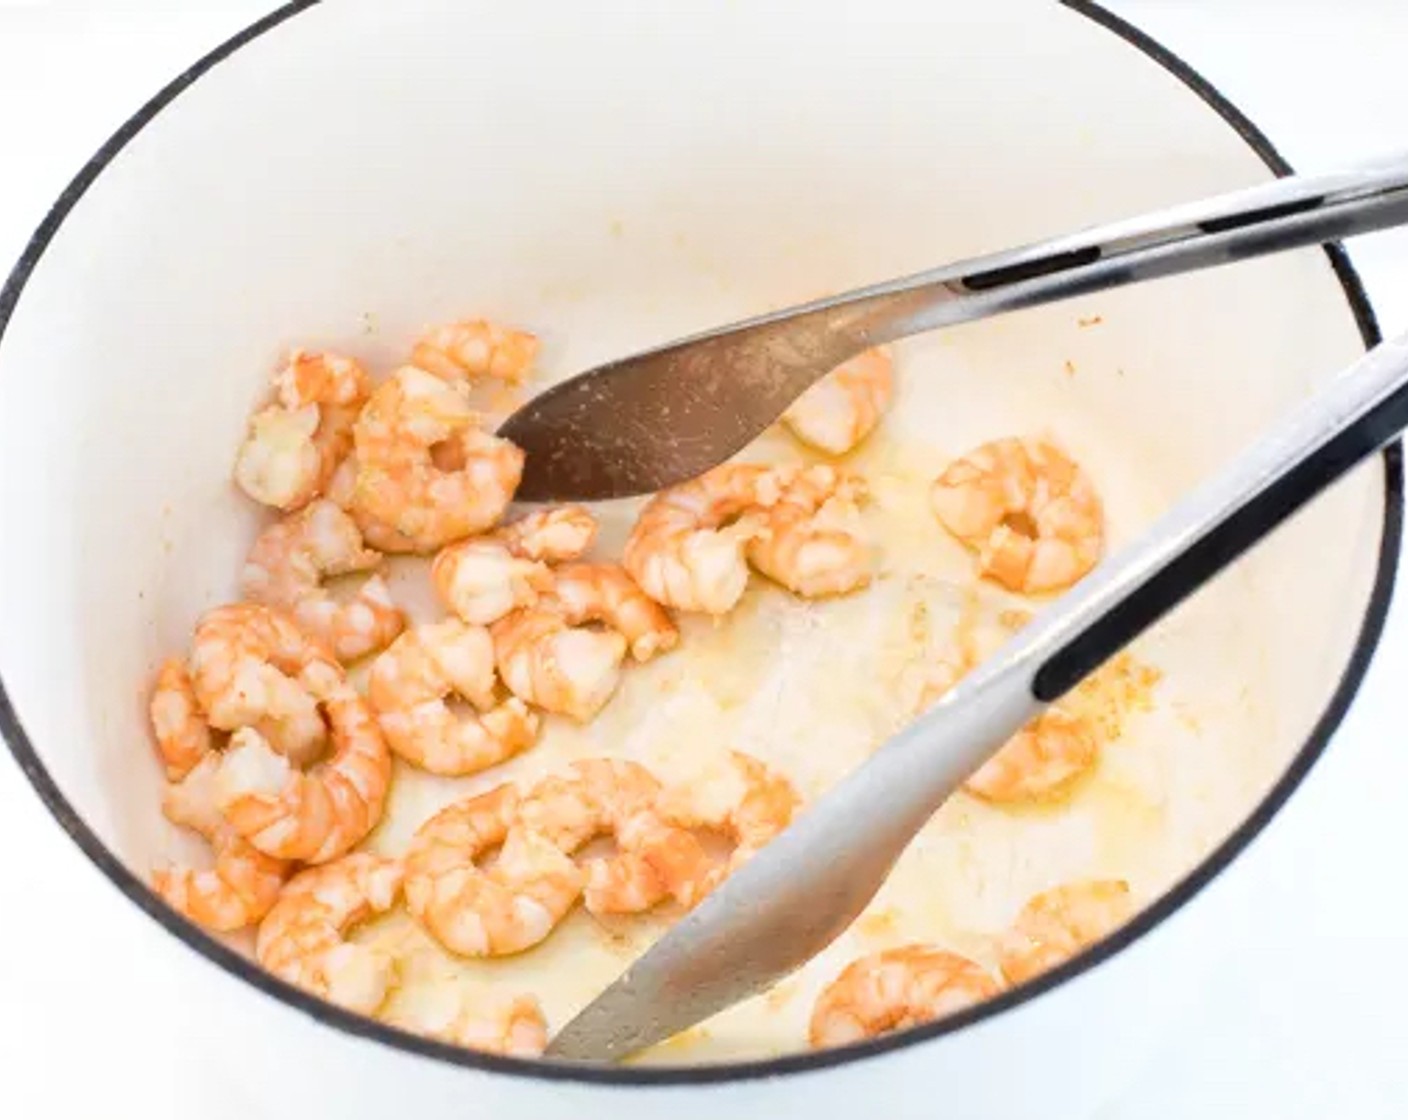 Schritt 1 Für die Zubereitung der Shrimps Olivenöl (1 EL) in einen grossen Topf geben. Die Shrimps (16) bei mittlerer Hitze anbraten, bis sie gar sind (dauert etwa 4-5 Minuten). Die Garnelen aus dem Topf nehmen und beiseite stellen.